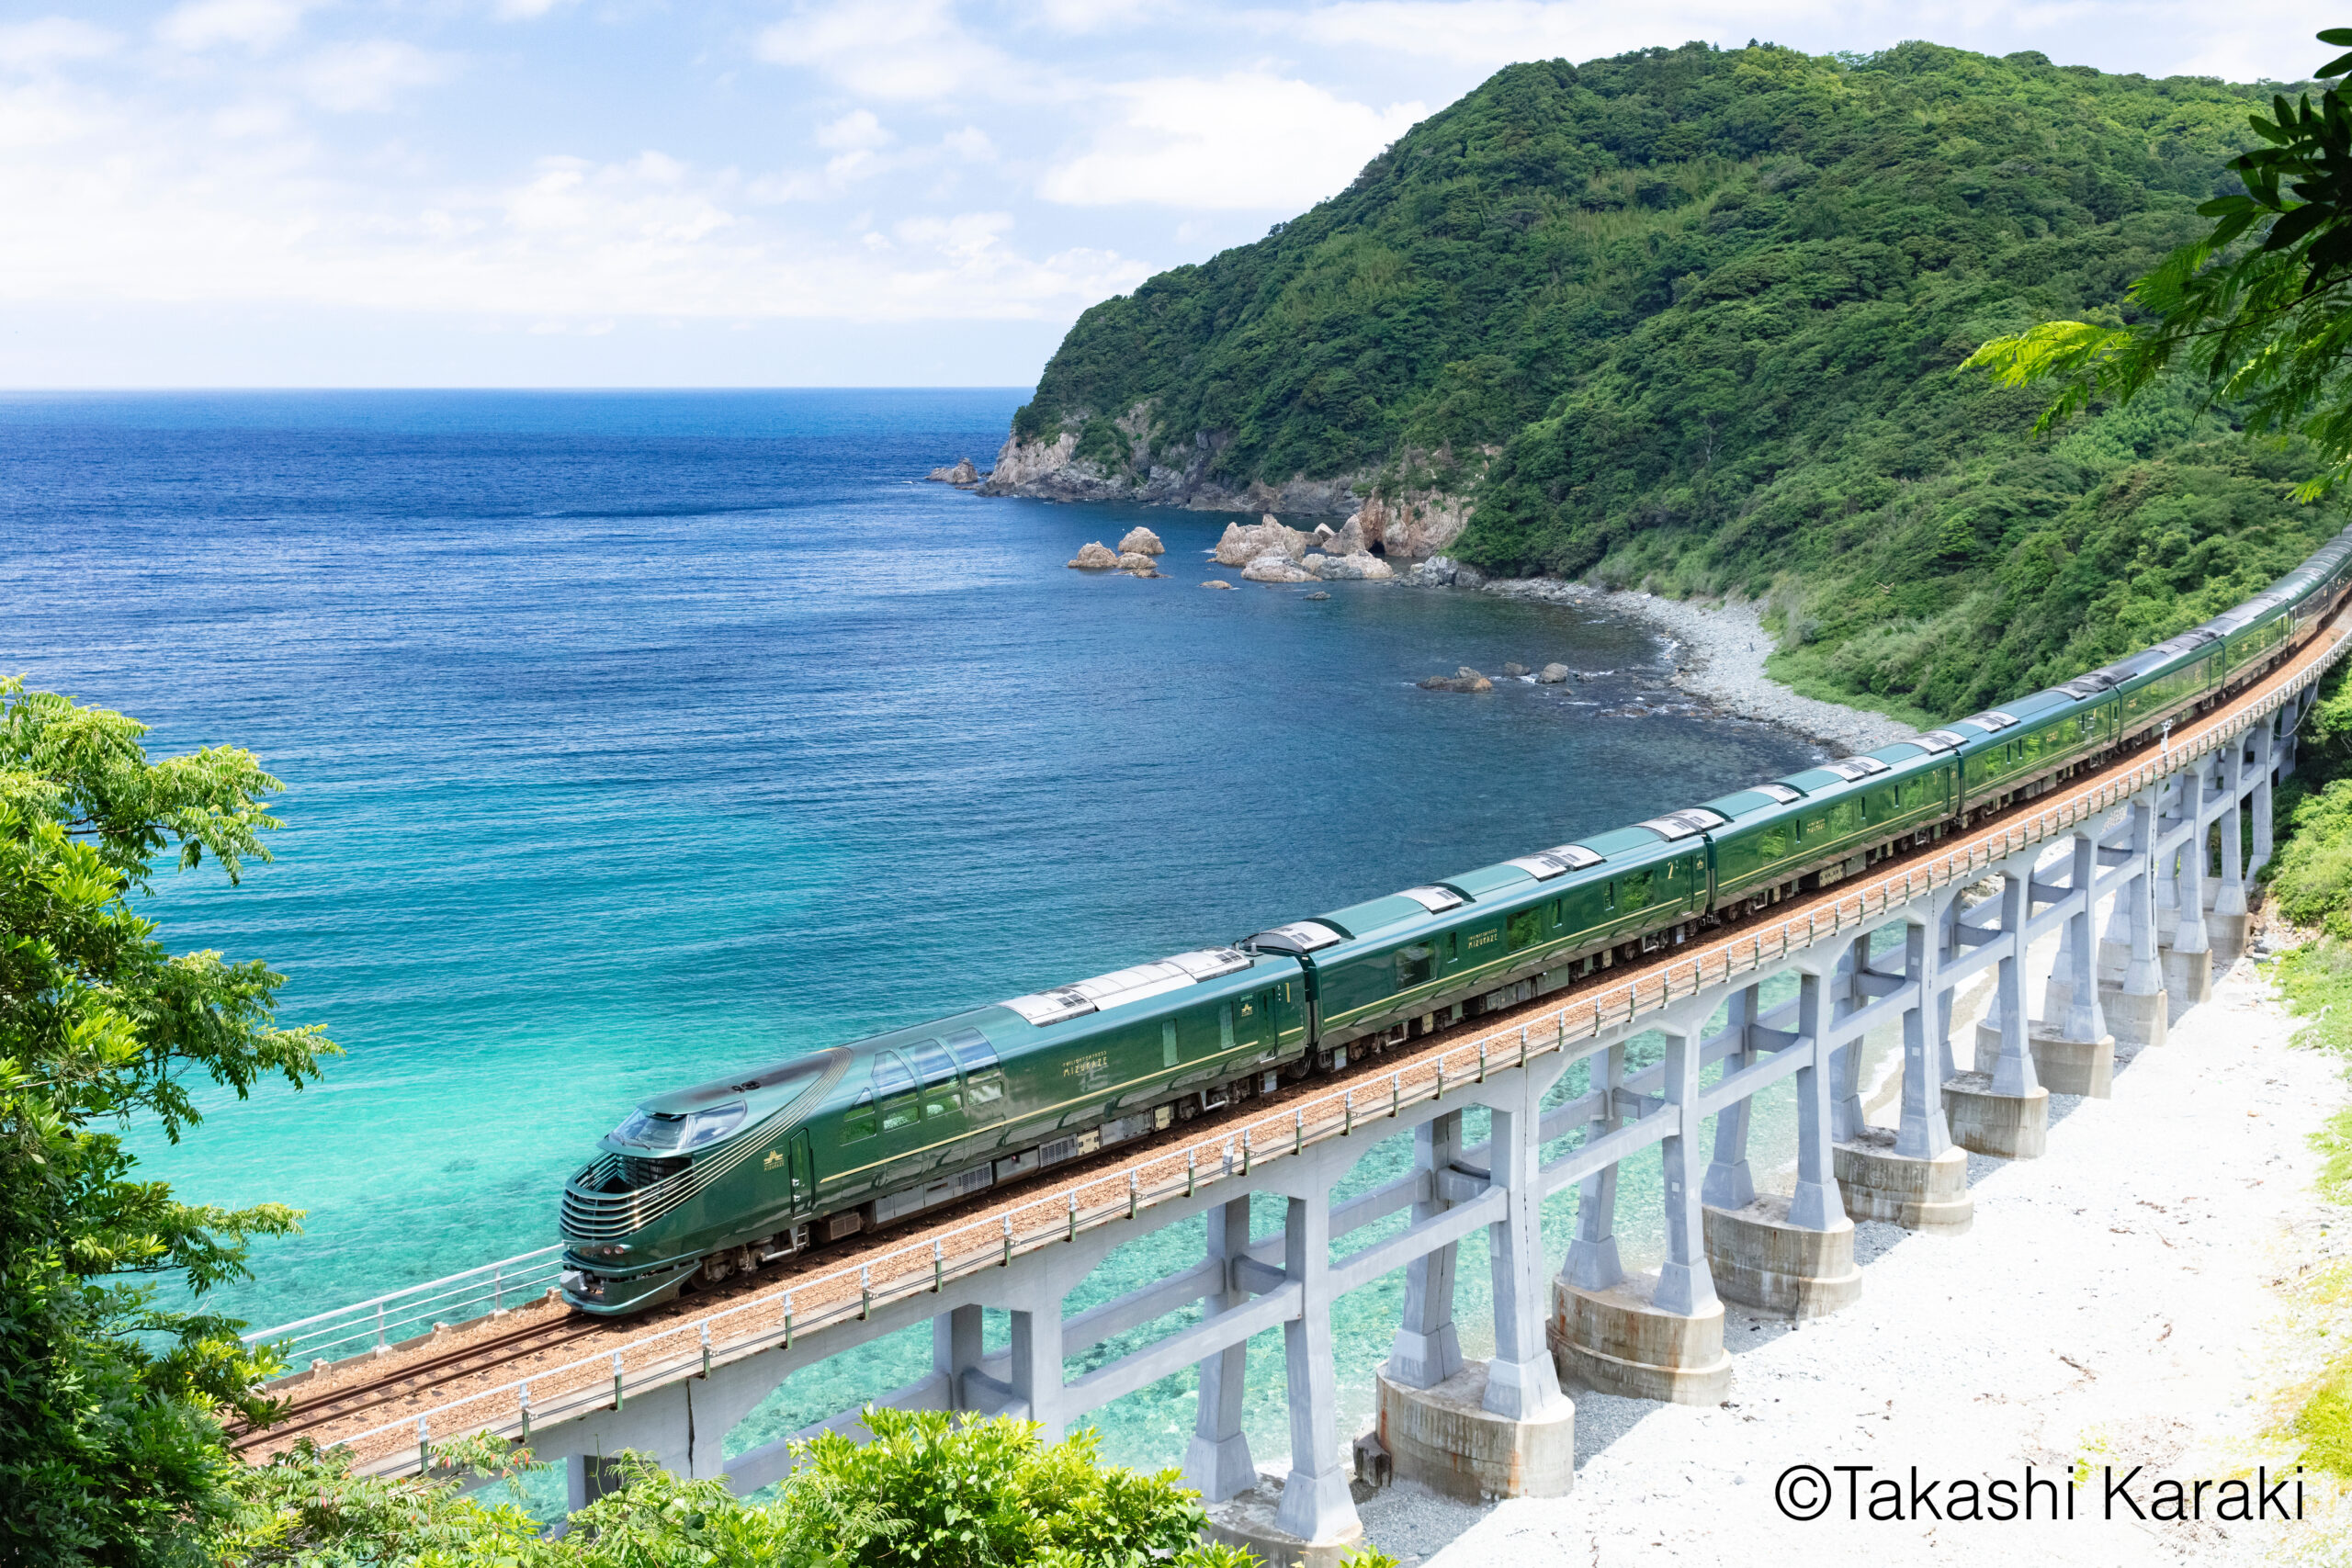 西日本旅客鉄道株式会社様が運行する「TWILIGHT EXPRESS 瑞風」の展望